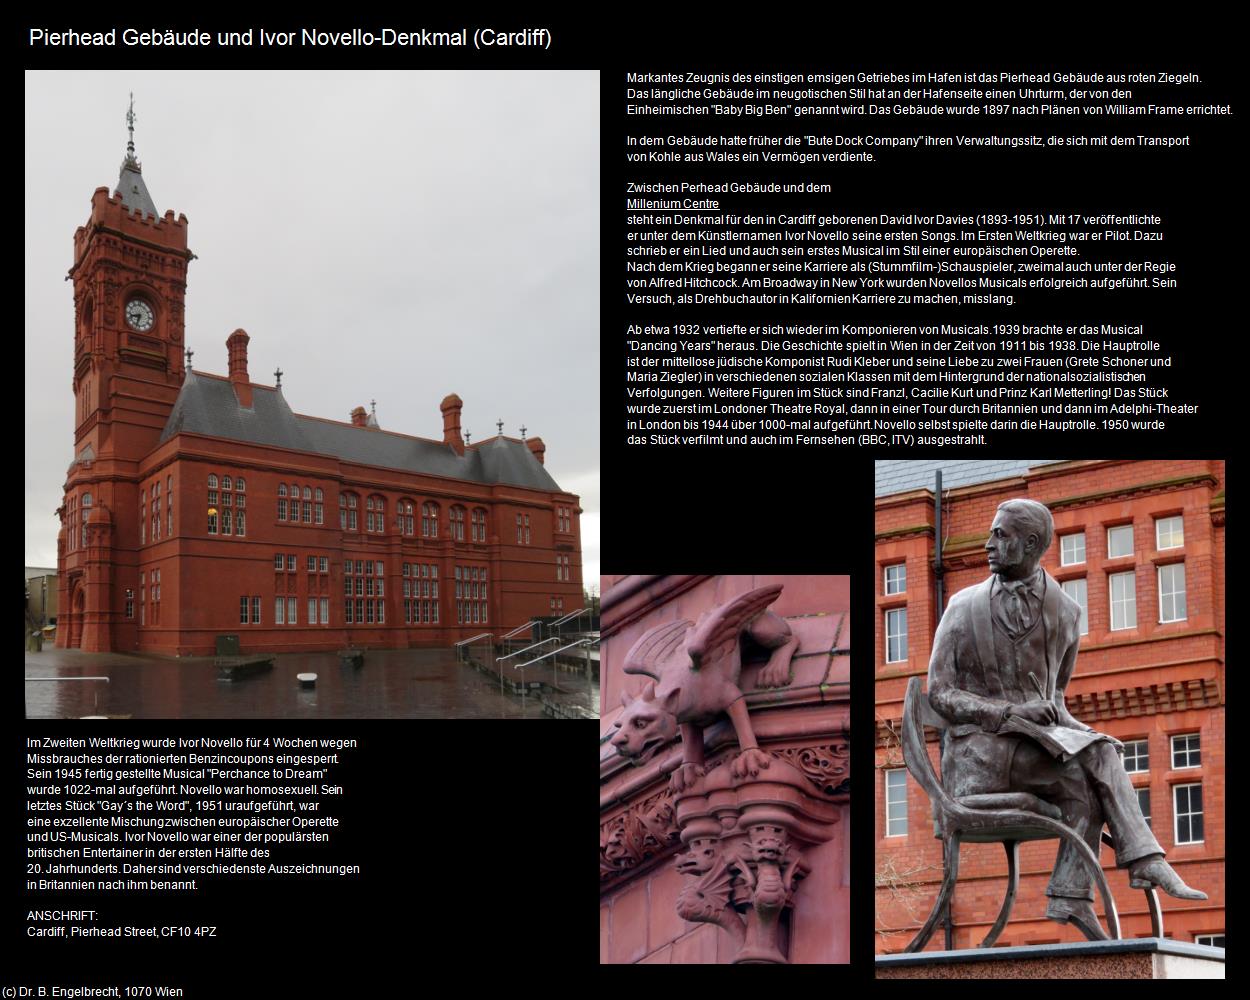 Pierhead Gebäude und Ivor Novello-Denkmal  (Cardiff, Wales) in Kulturatlas-ENGLAND und WALES(c)B.Engelbrecht